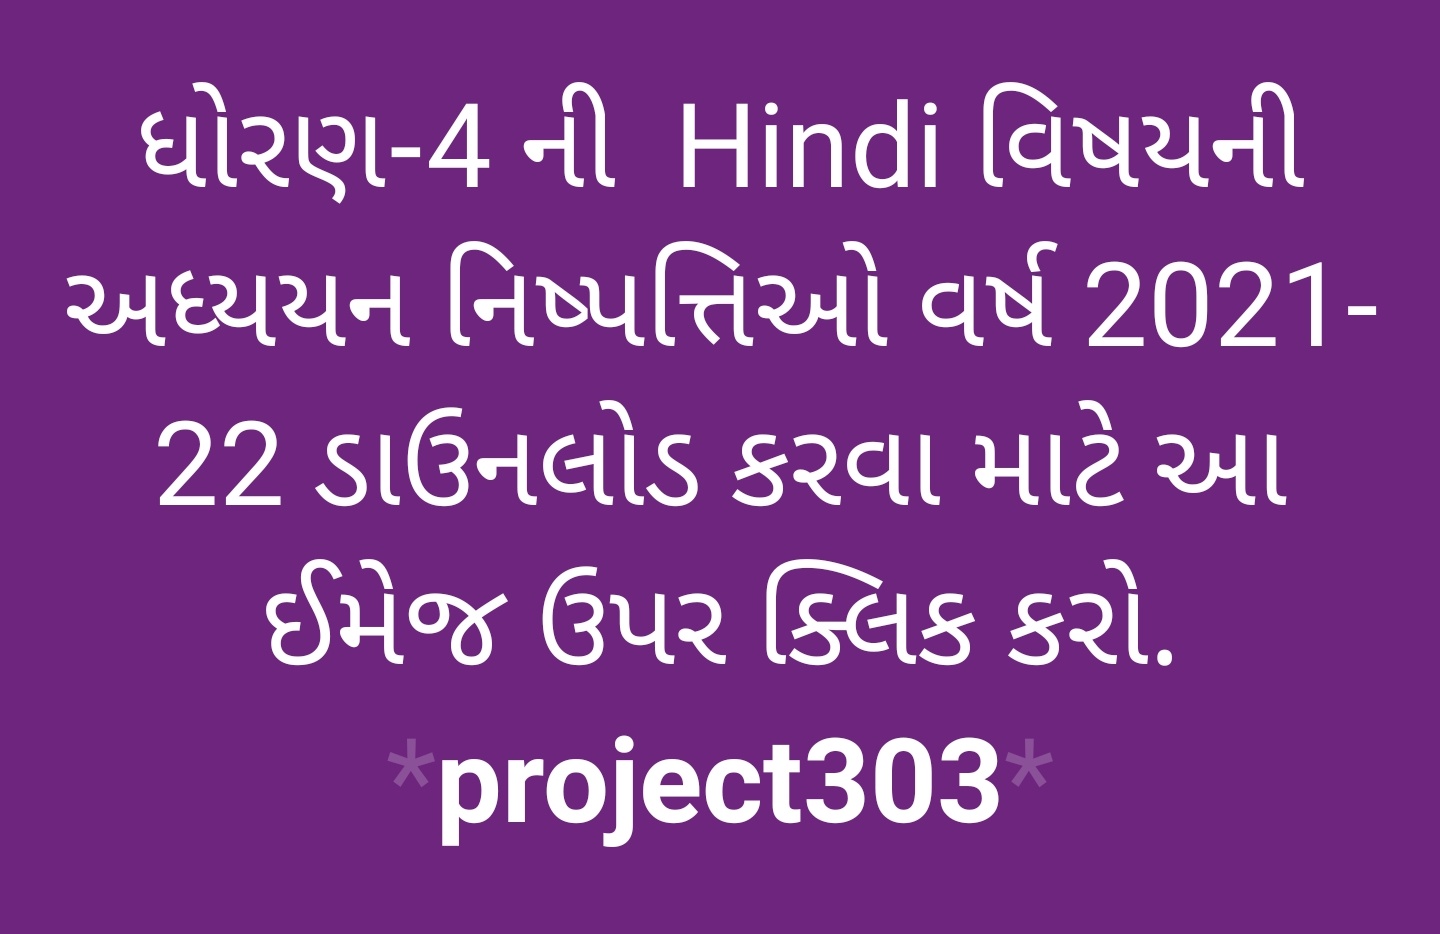 https://project303.blogspot.com/2021/06/std-4-nishpatti-all.html